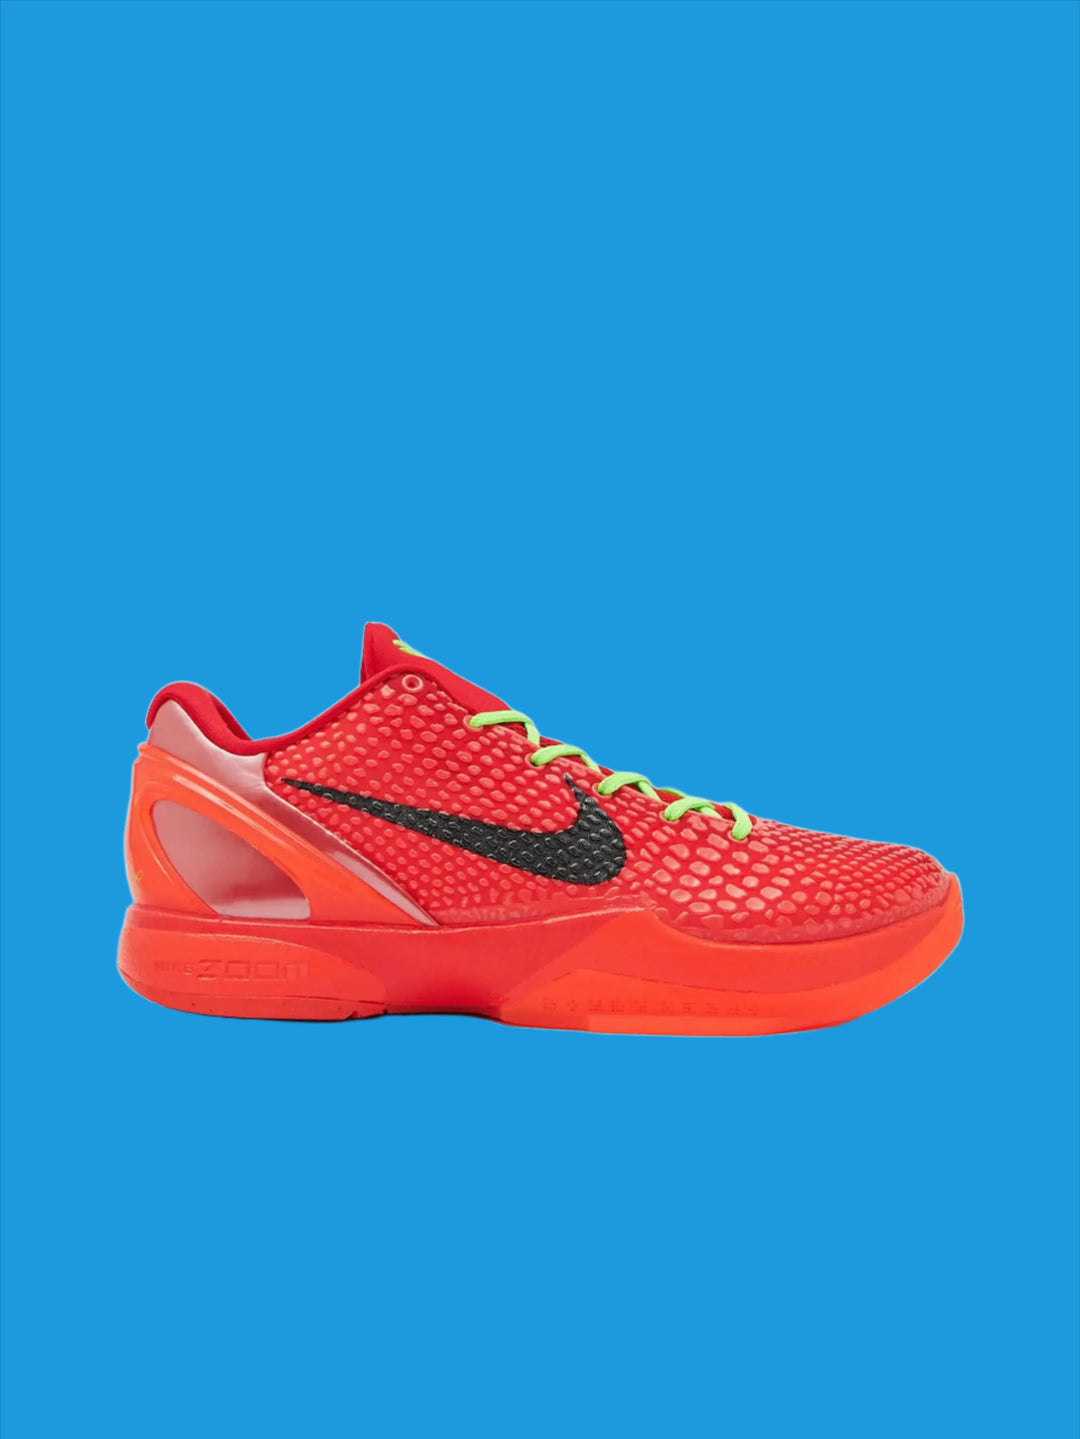 Nike Kobe 6 Protro Reverse Grinch in Melbourne, Australia - Prior